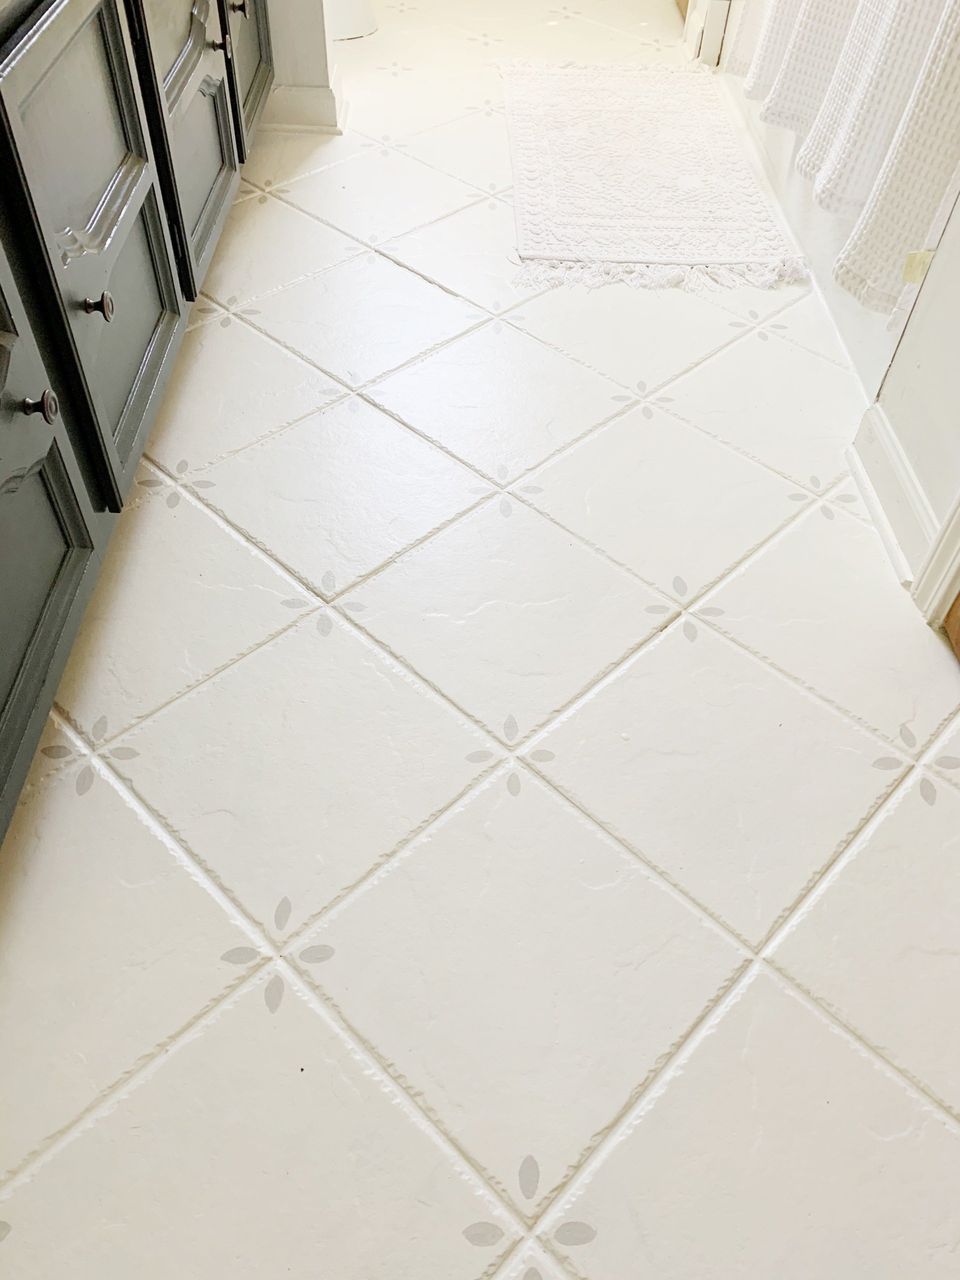 Freshly painted tile floors